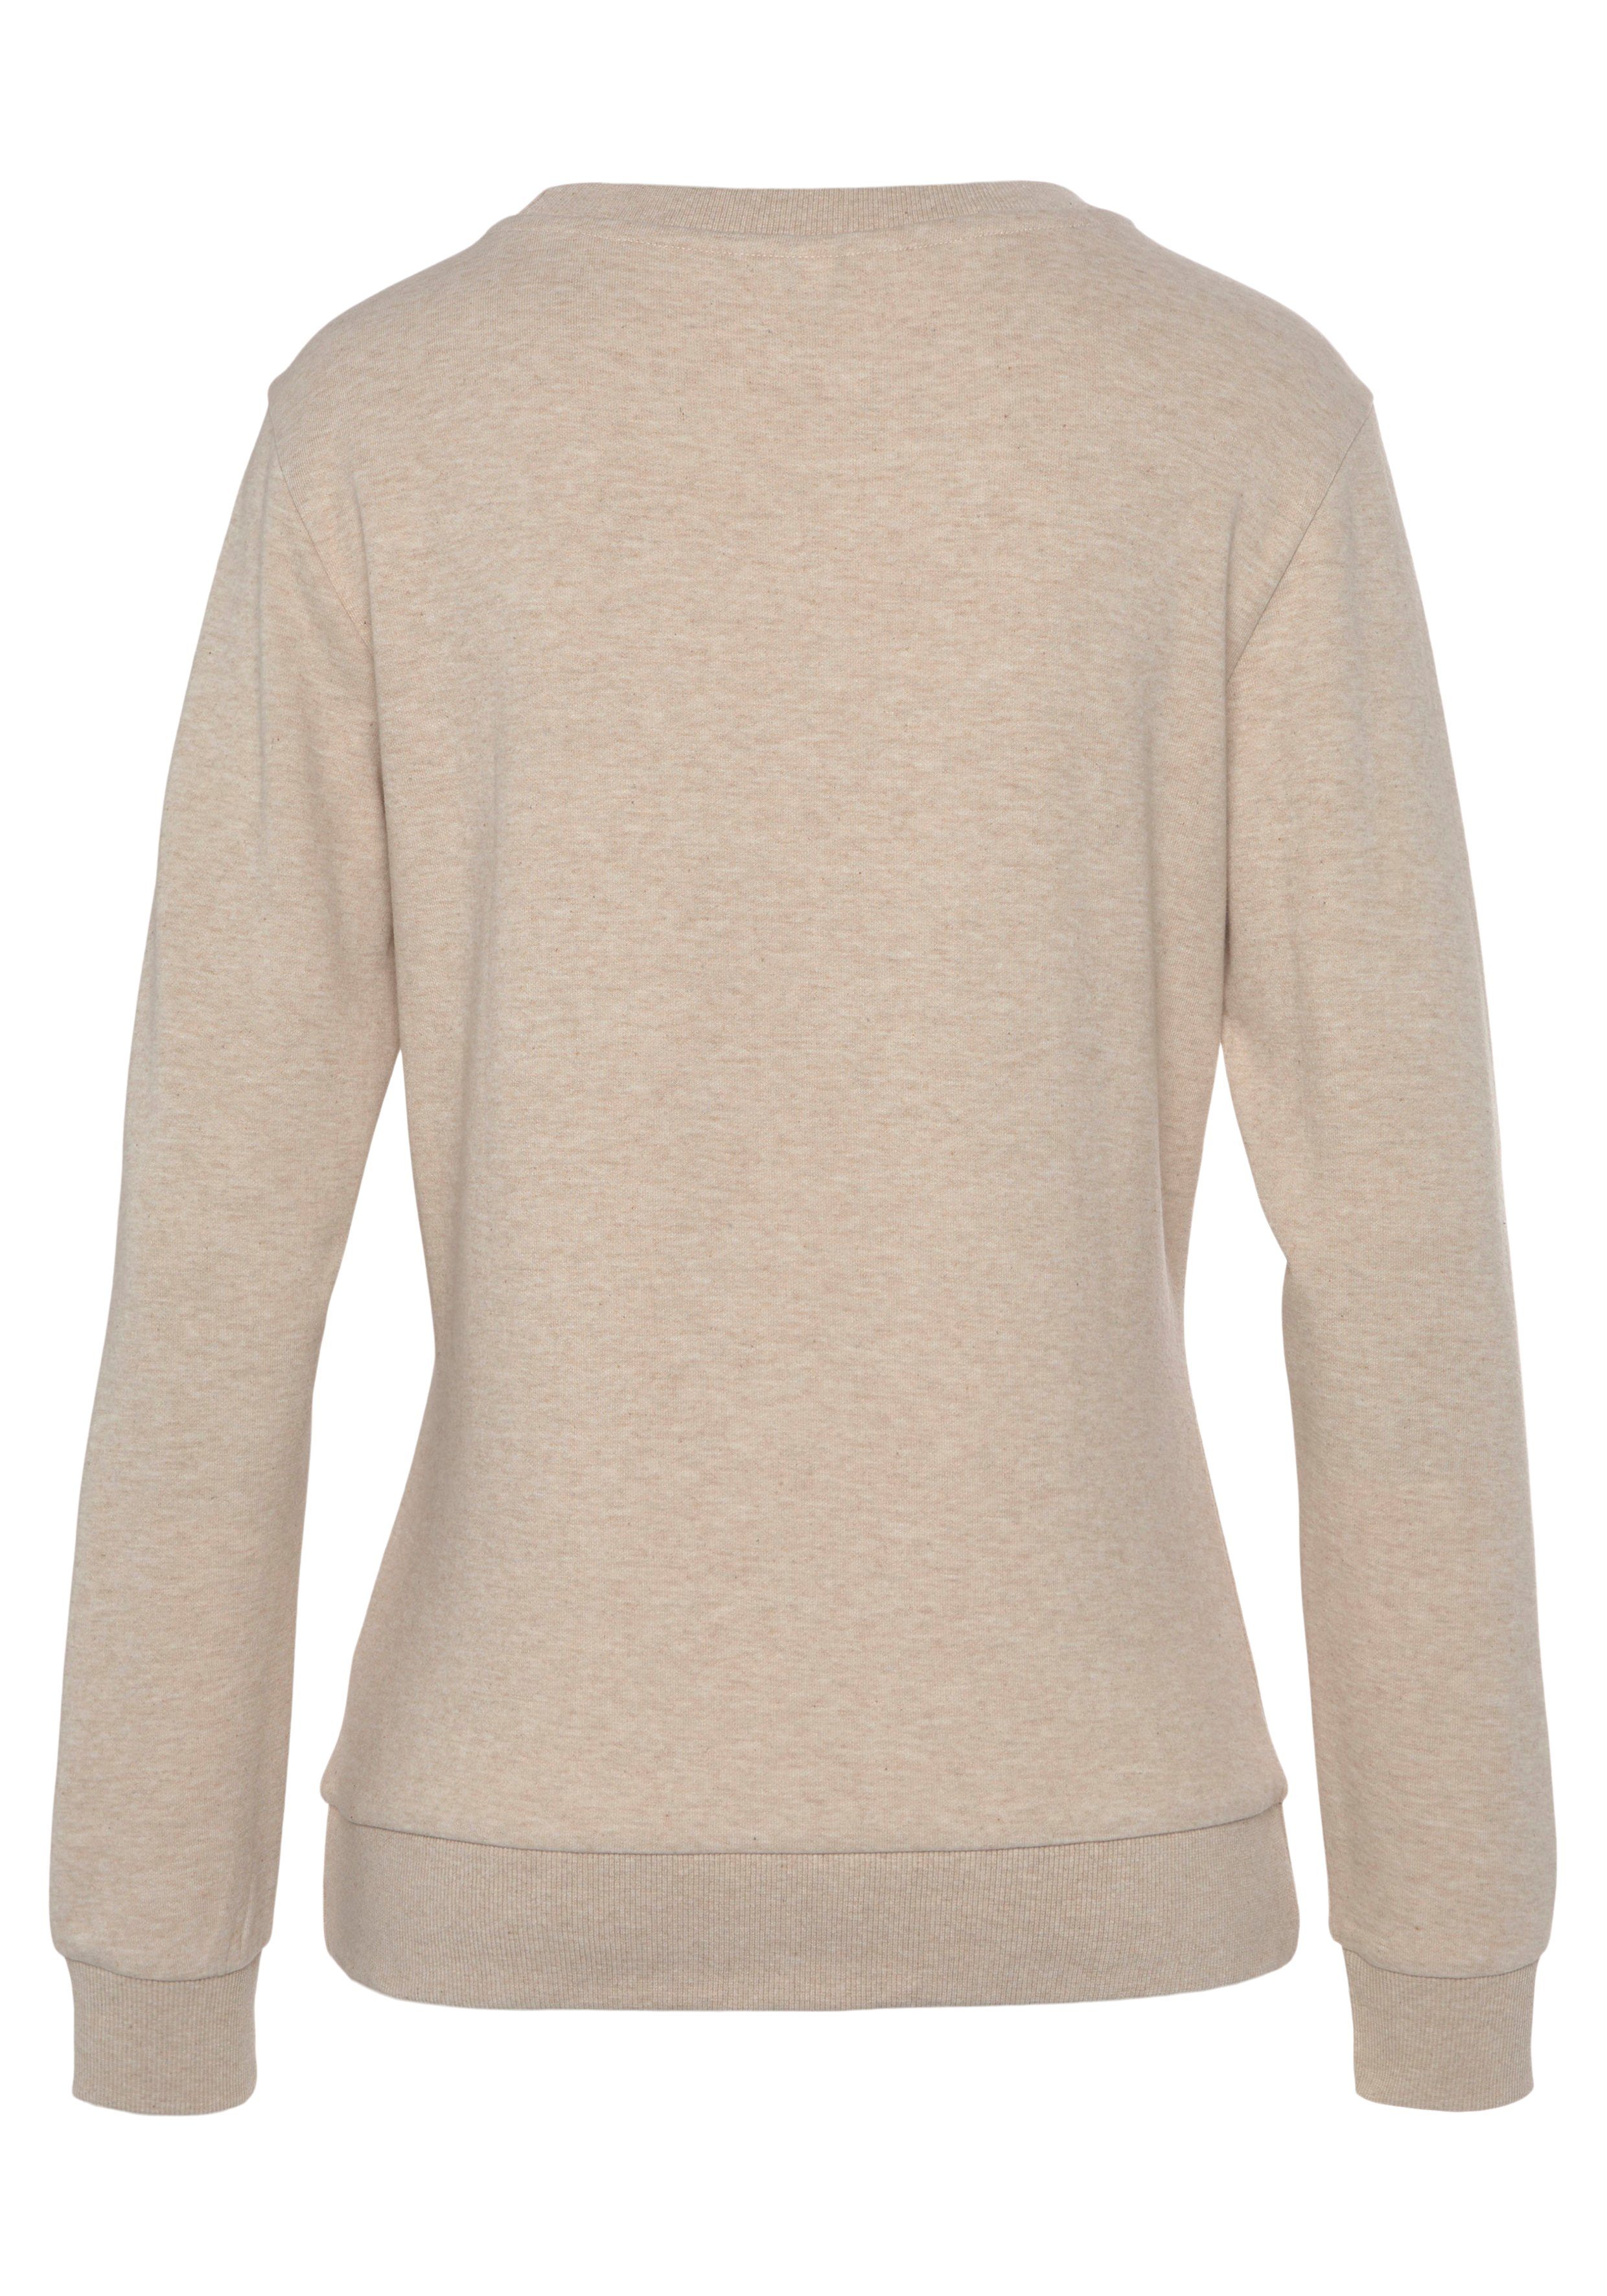 -Loungeshirt Loungeanzug beige Sweatshirt Loungewear Logostickerei, Loungewear, Bench. mit meliert glänzender